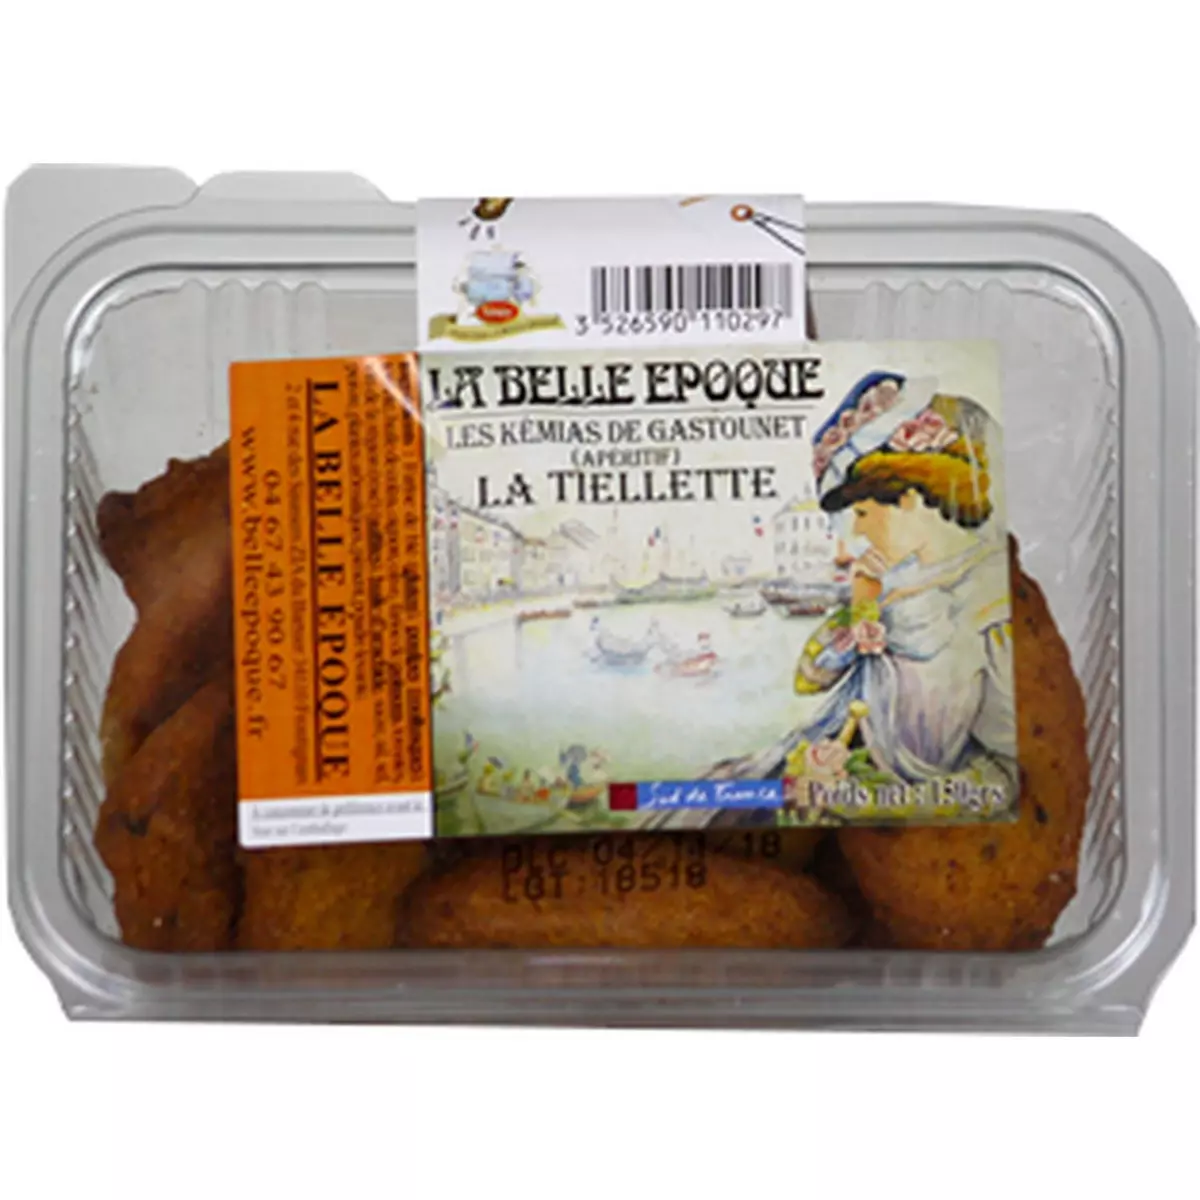 LA BELLE EPOQUE Kémias de Gastounet La Tiellette biscuits apéro 150g